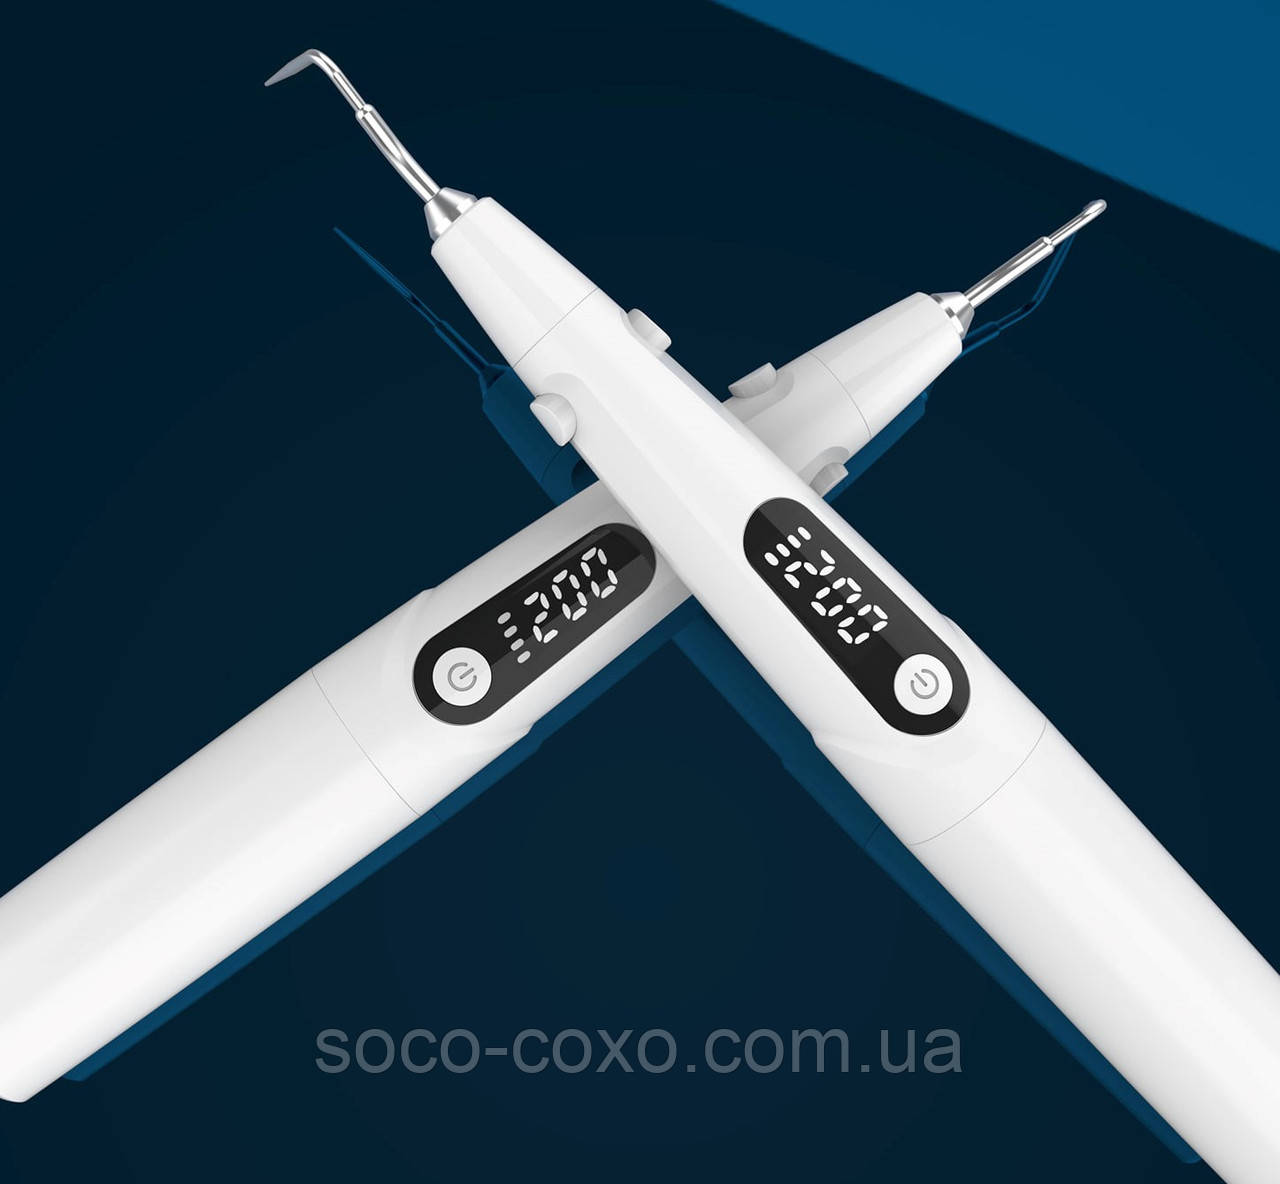 Термоплаггер COXO C Fill mini (міні). NEW 2021! Новинка. Оригінал. Сертифікат. Гарантія.